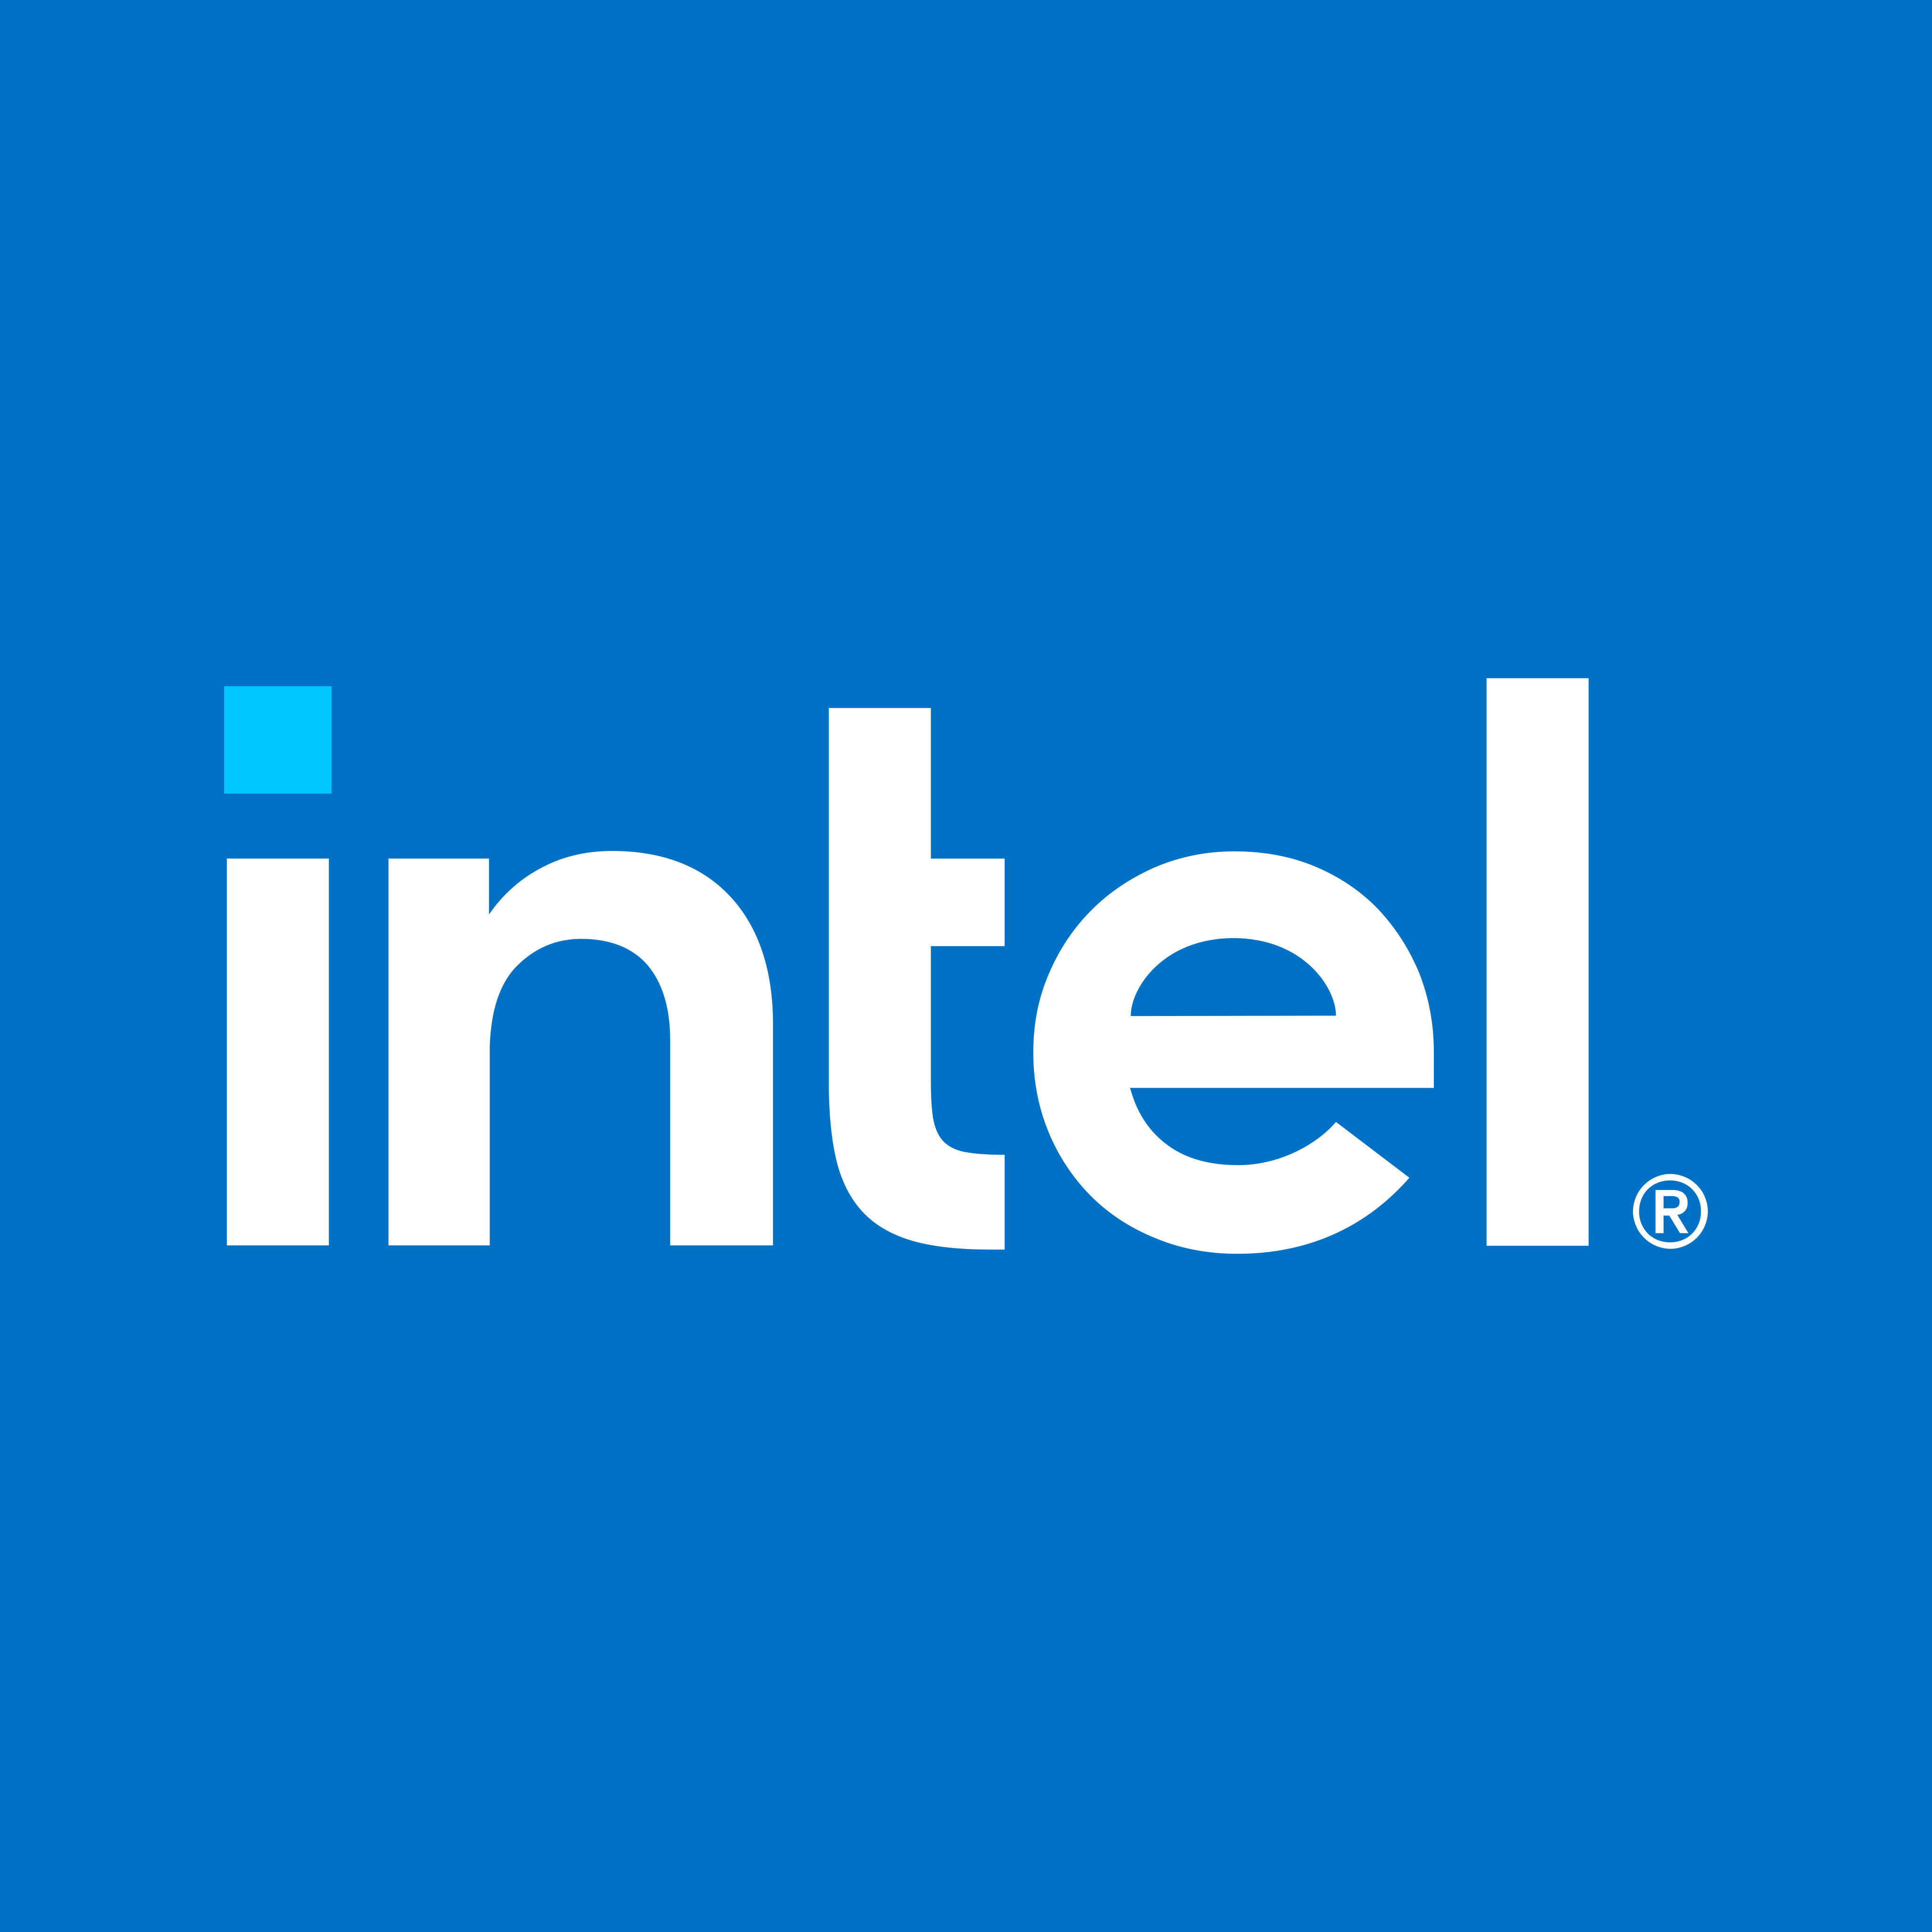 Логотип Intel - PNG и вектор - Скачать логотип